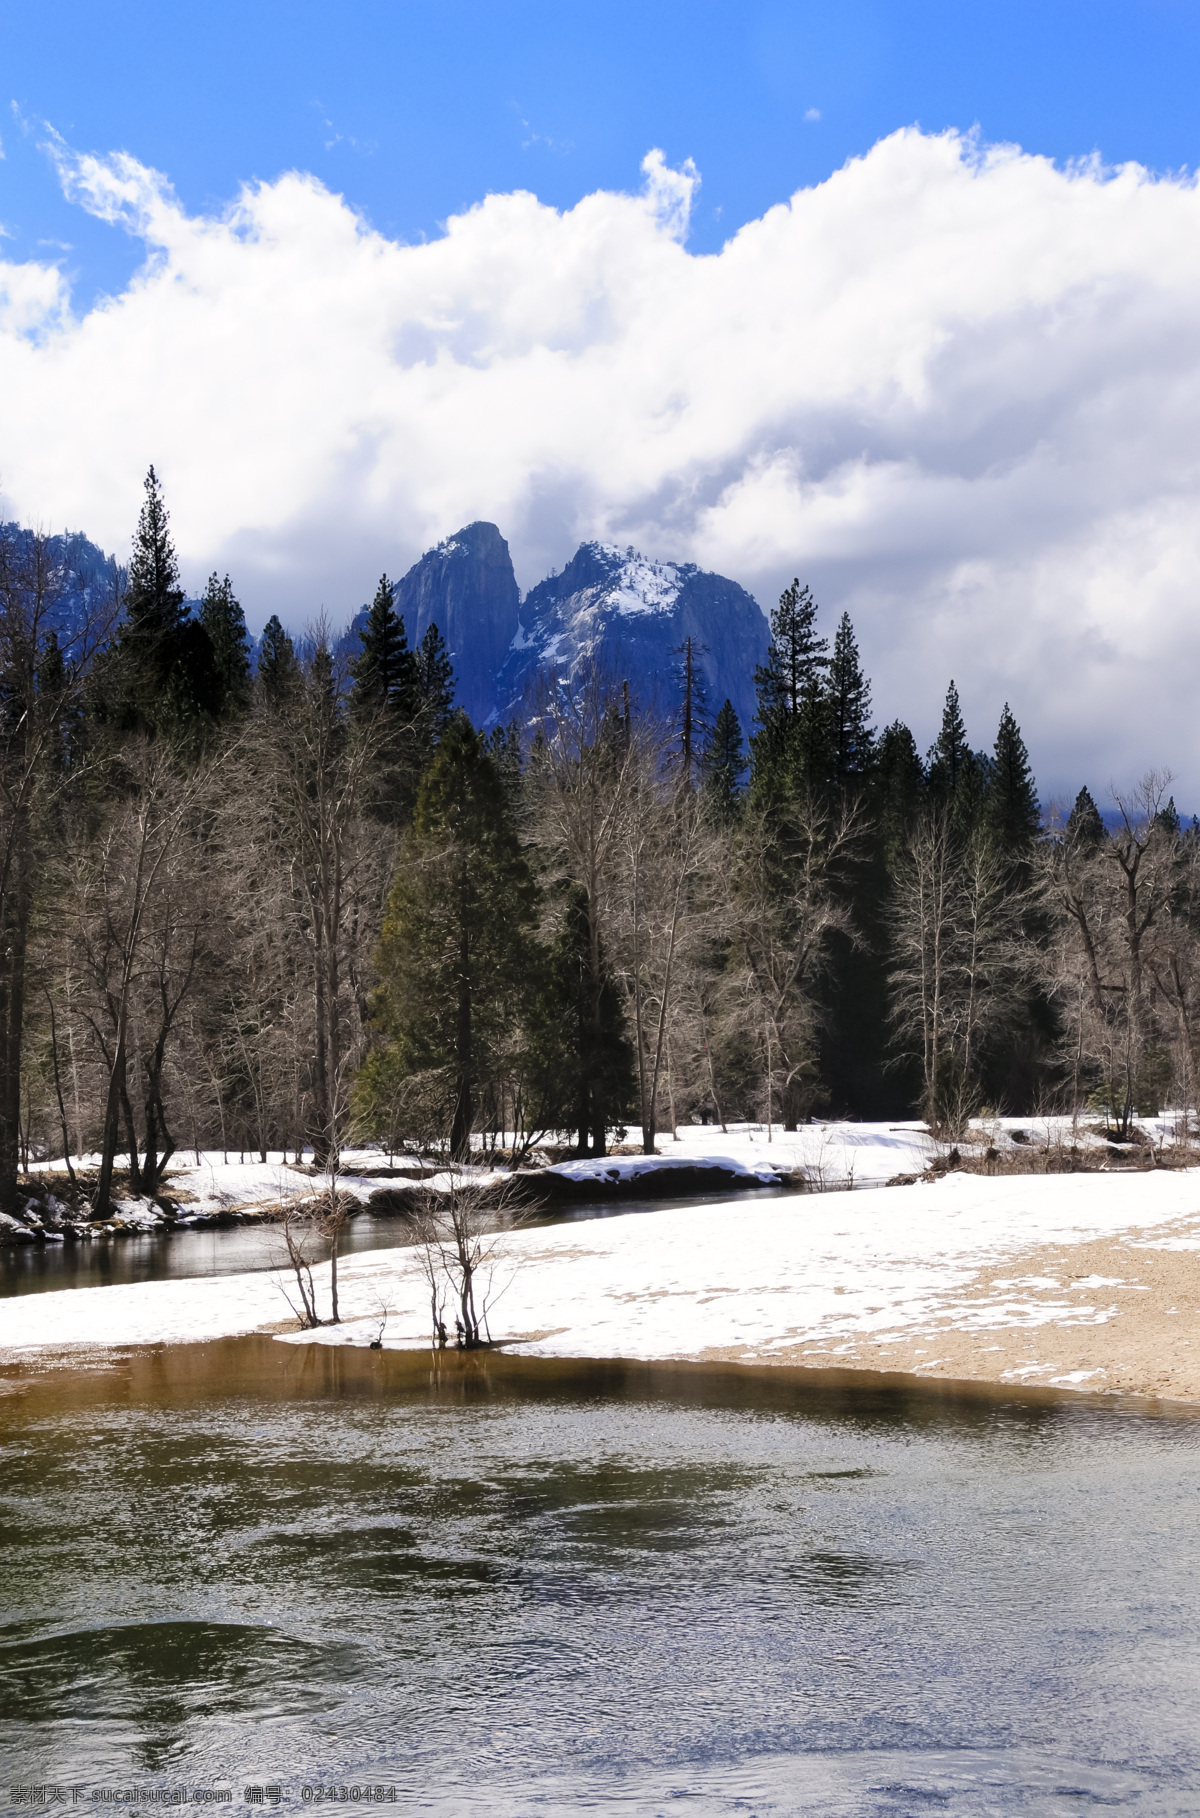 冬天风景摄影 天空 度假 风景 美景 自然景观 自然风景 旅游摄影 旅游 蓝天白云 雪山 湖泊 雪地 冬天风景 白色